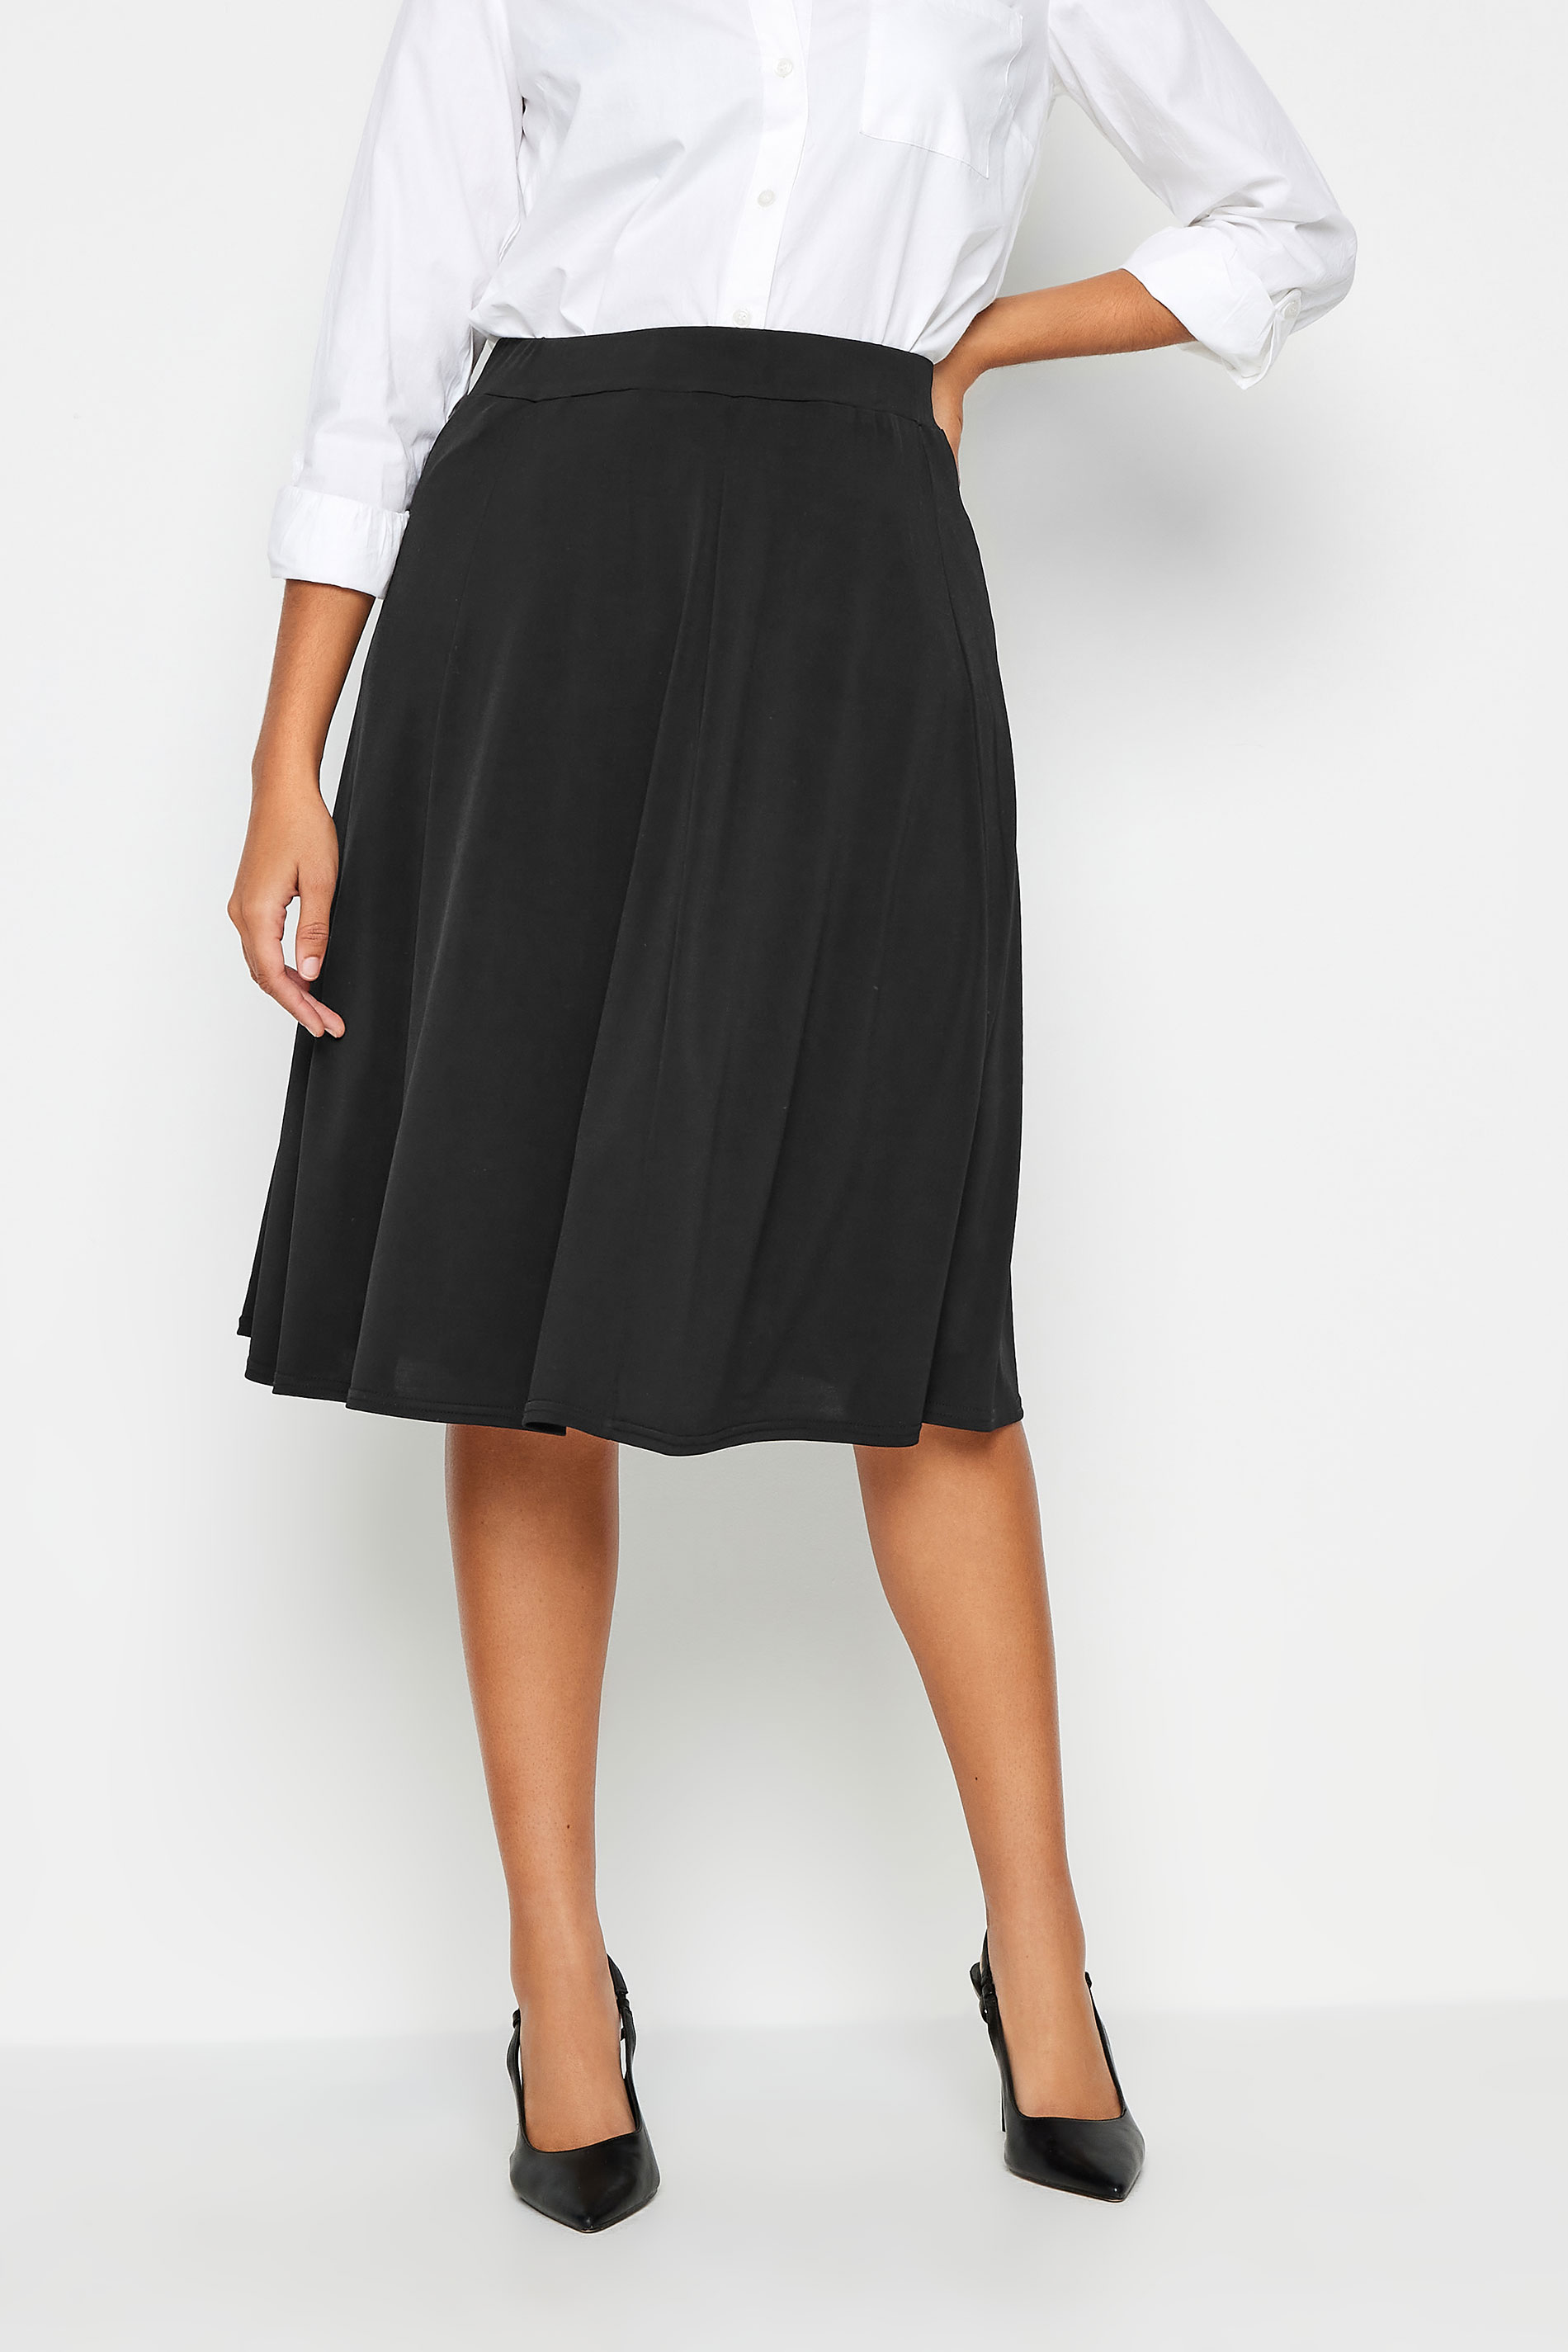 M&Co Black Panelled Skirt | M&Co 1